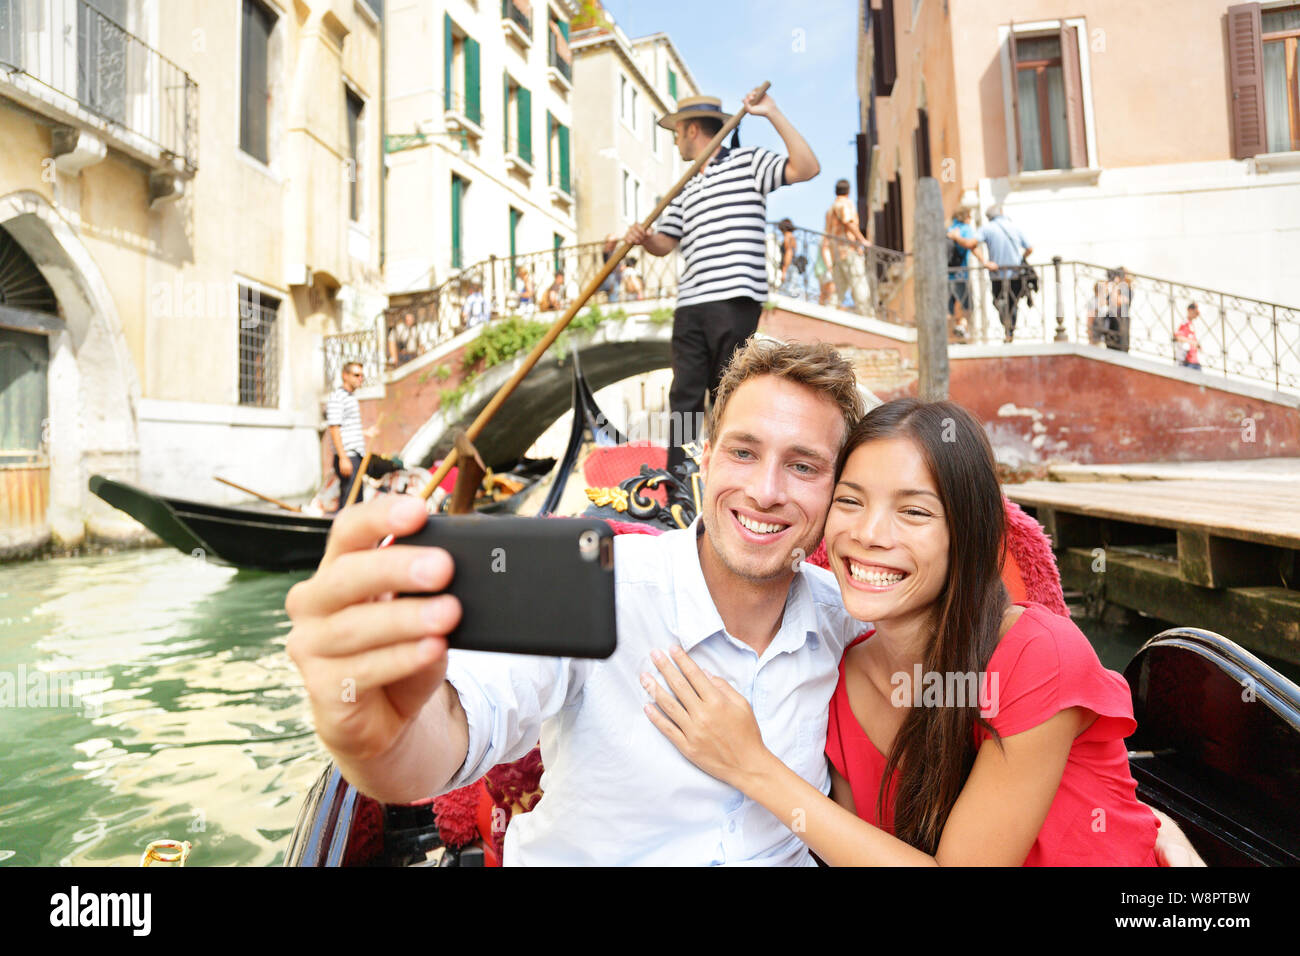 Selfie paio di scattare una foto in gondola a Venezia travel vacation. Gli amanti della bella su un romantico giro in barca attraverso i canali veneziani tenendo Self-portrait foto con lo smartphone durante la vacanza. Foto Stock